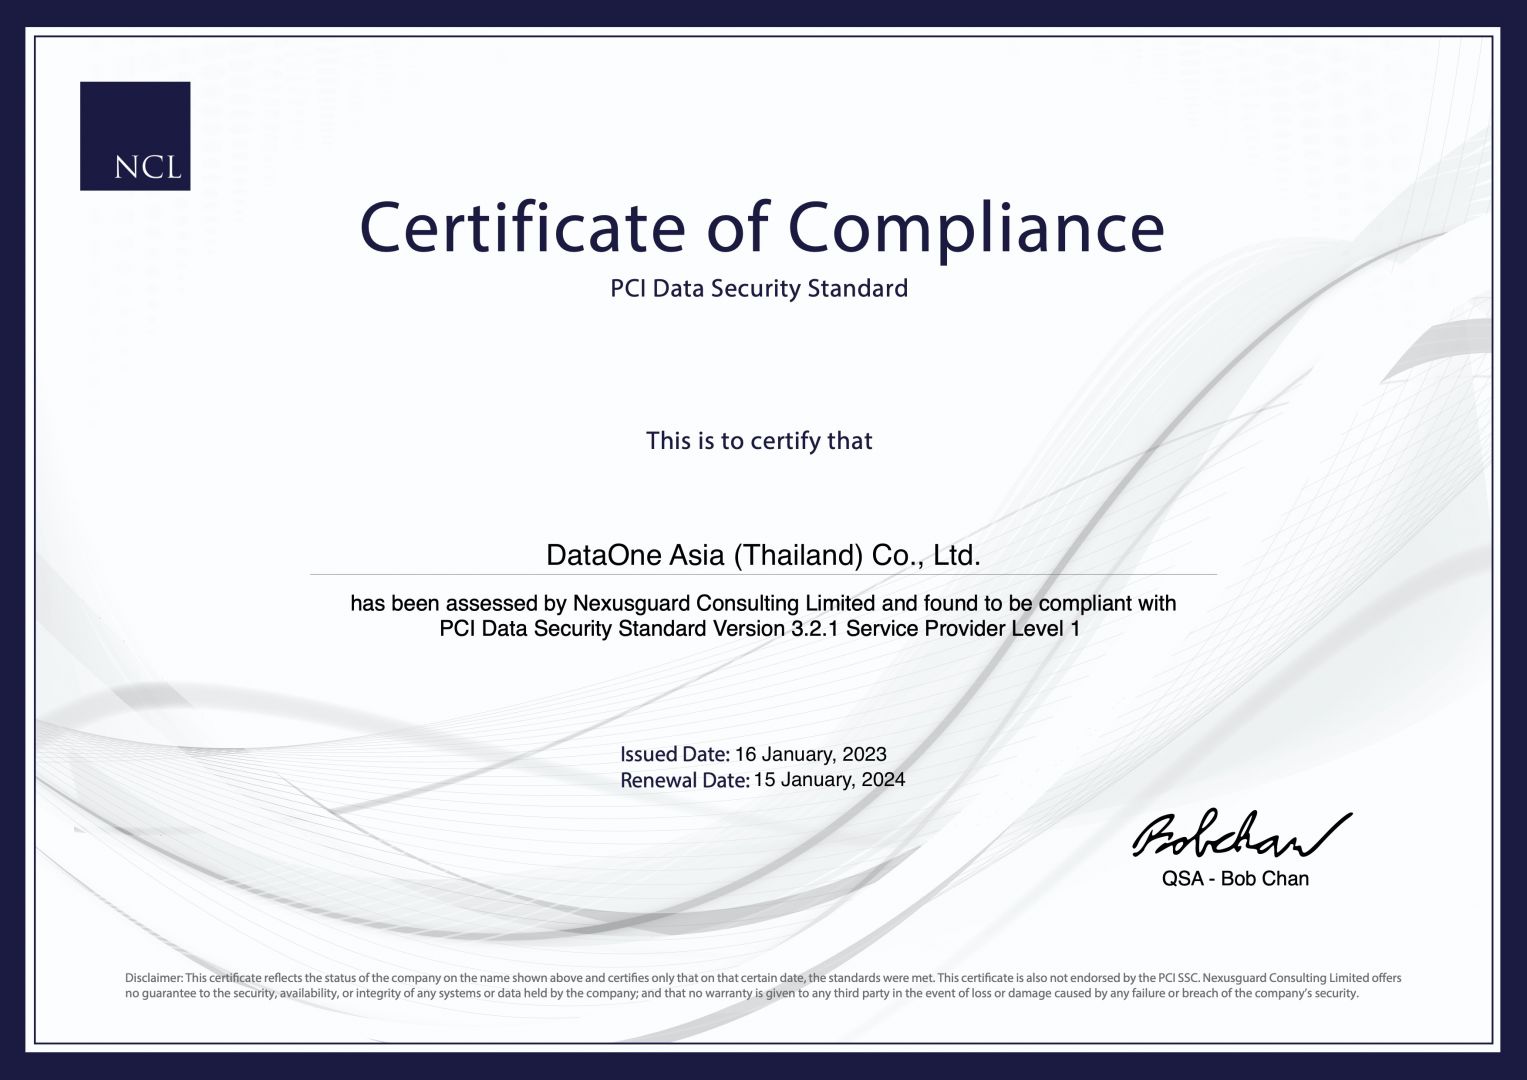 D1-PCI-certificate-2023 (1).jpg